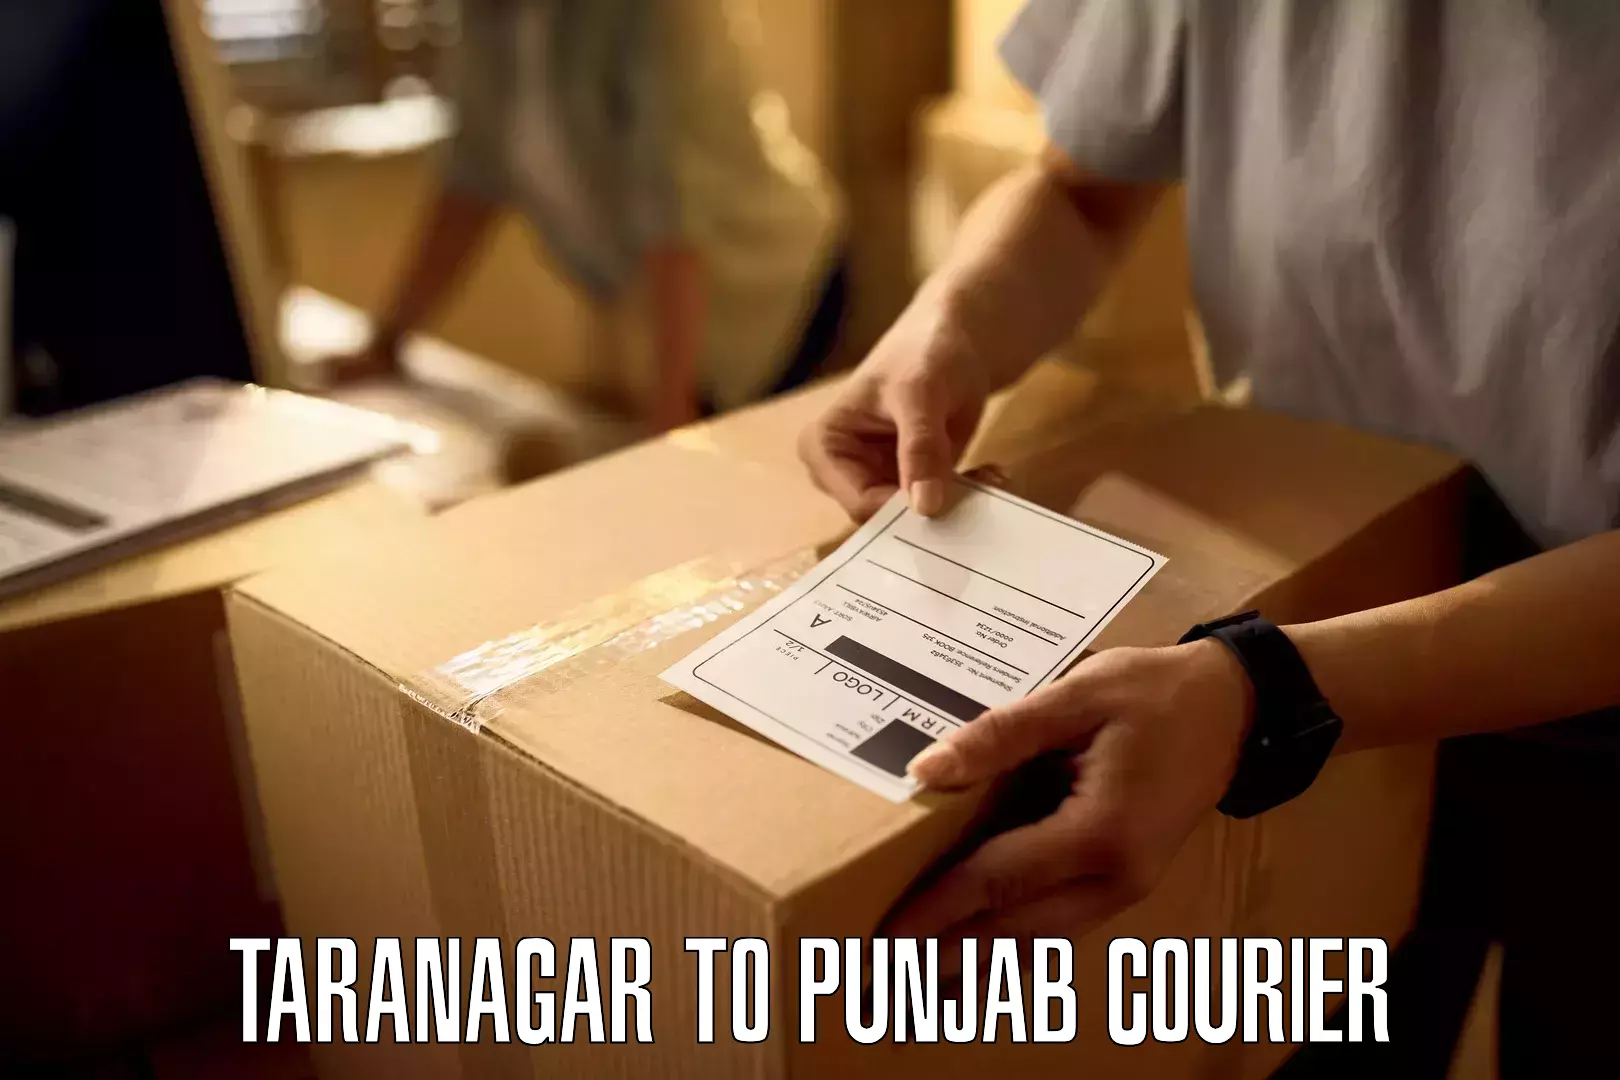 Easy access courier services Taranagar to Zira